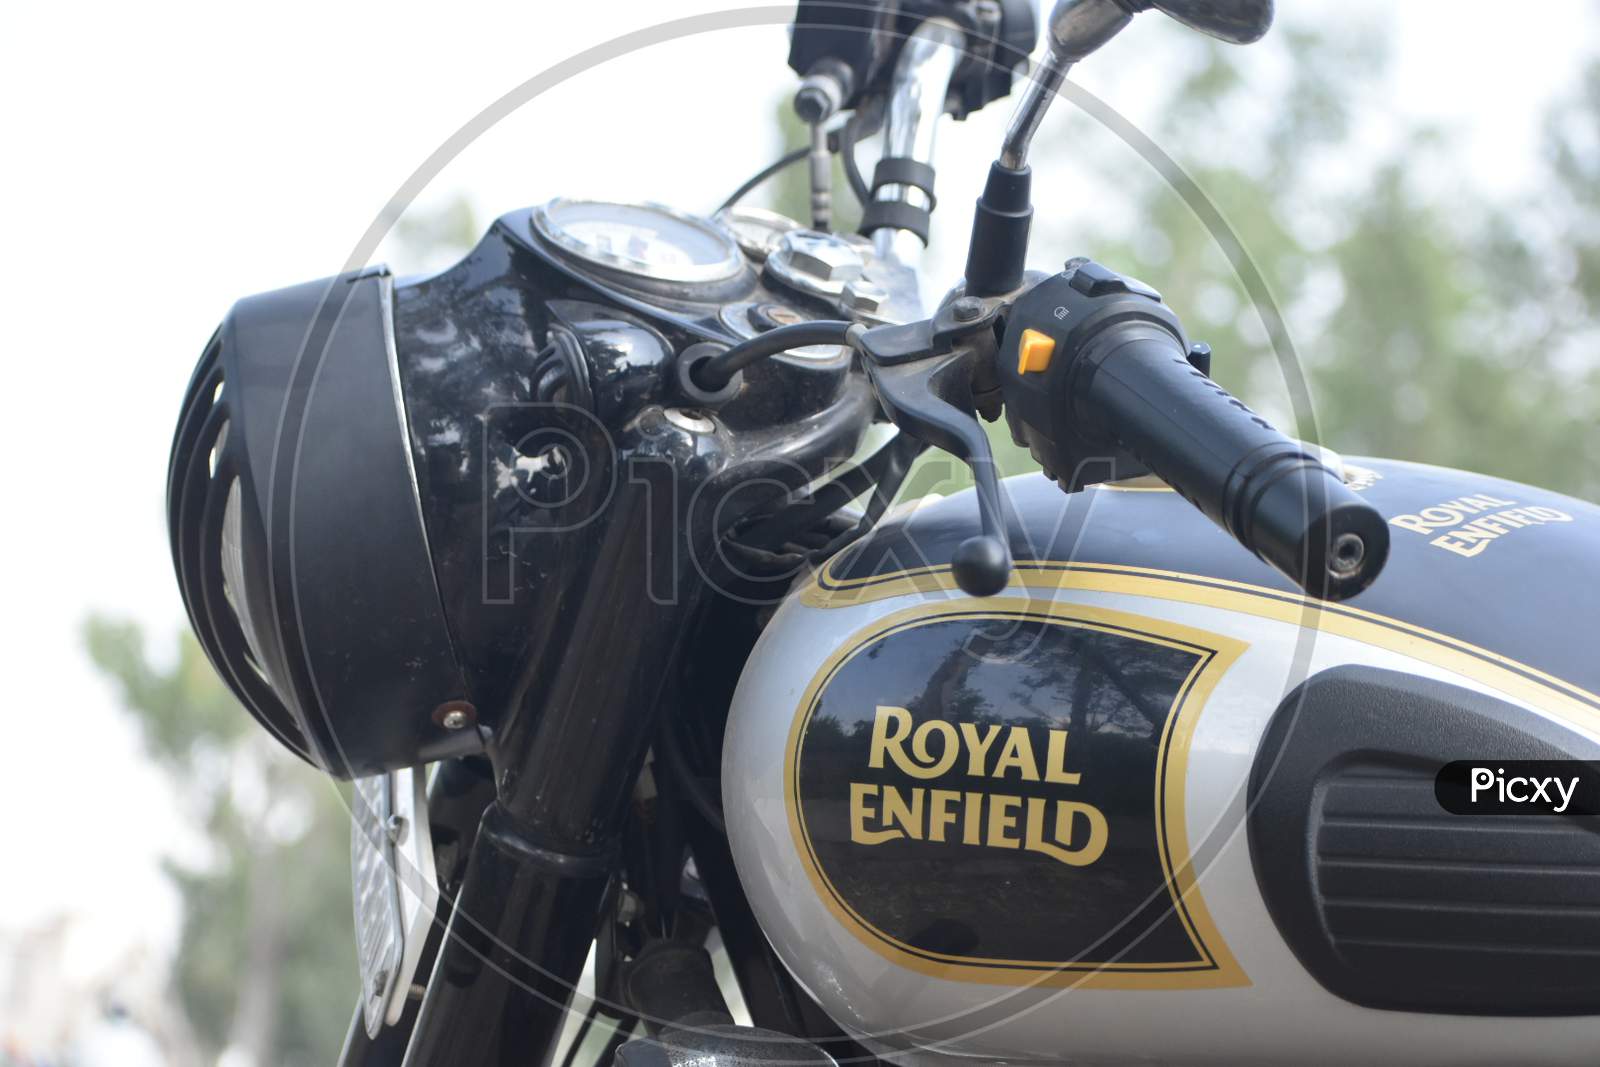 Royal Enfield Bike classic 350